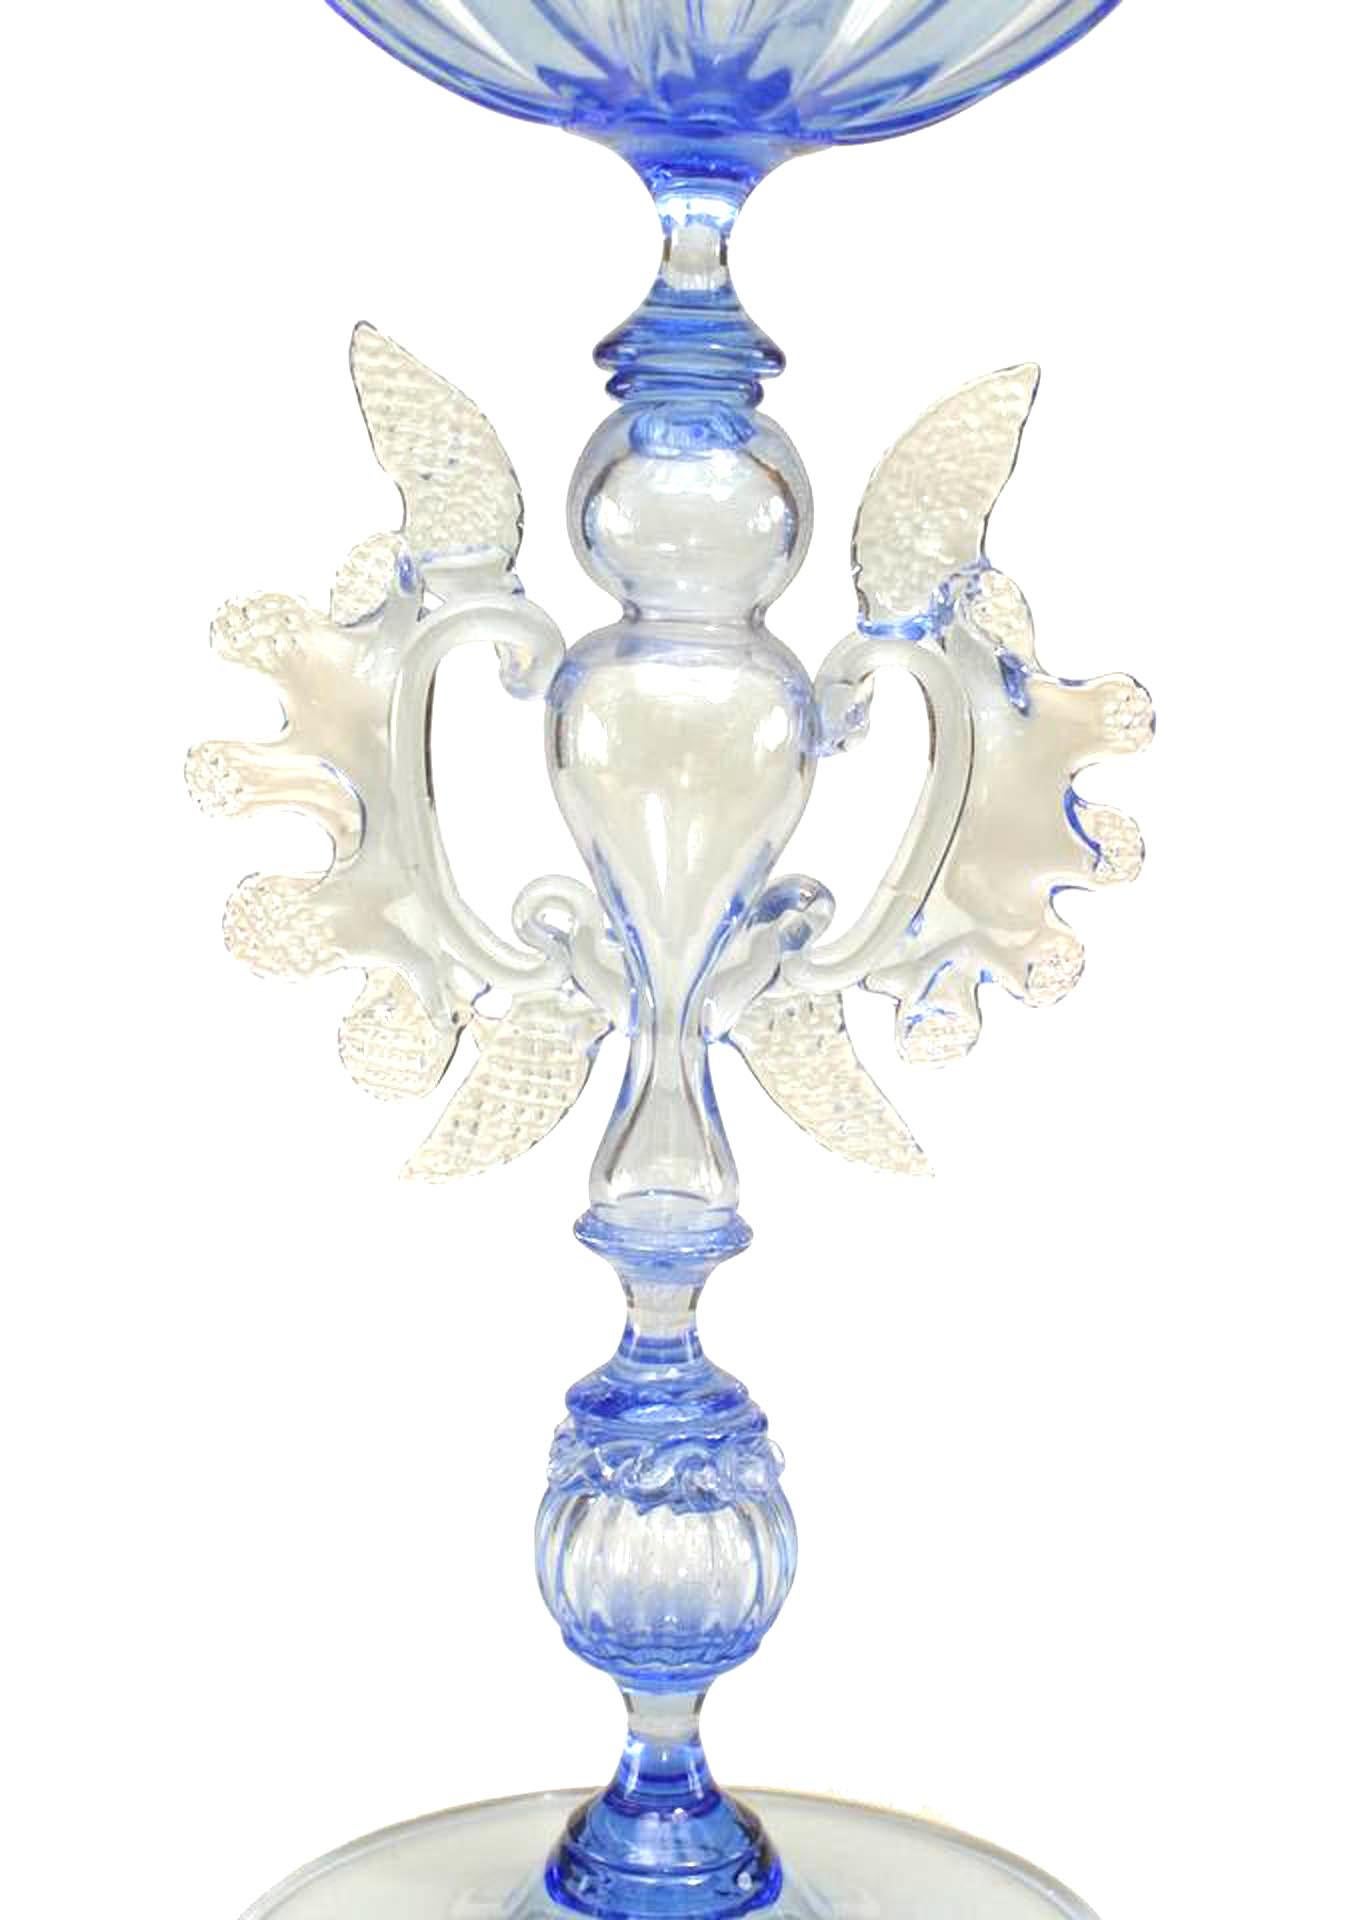 Italian (1890) Venetian Murano light blue glass goblet with open hour glass design pedestal stem.
